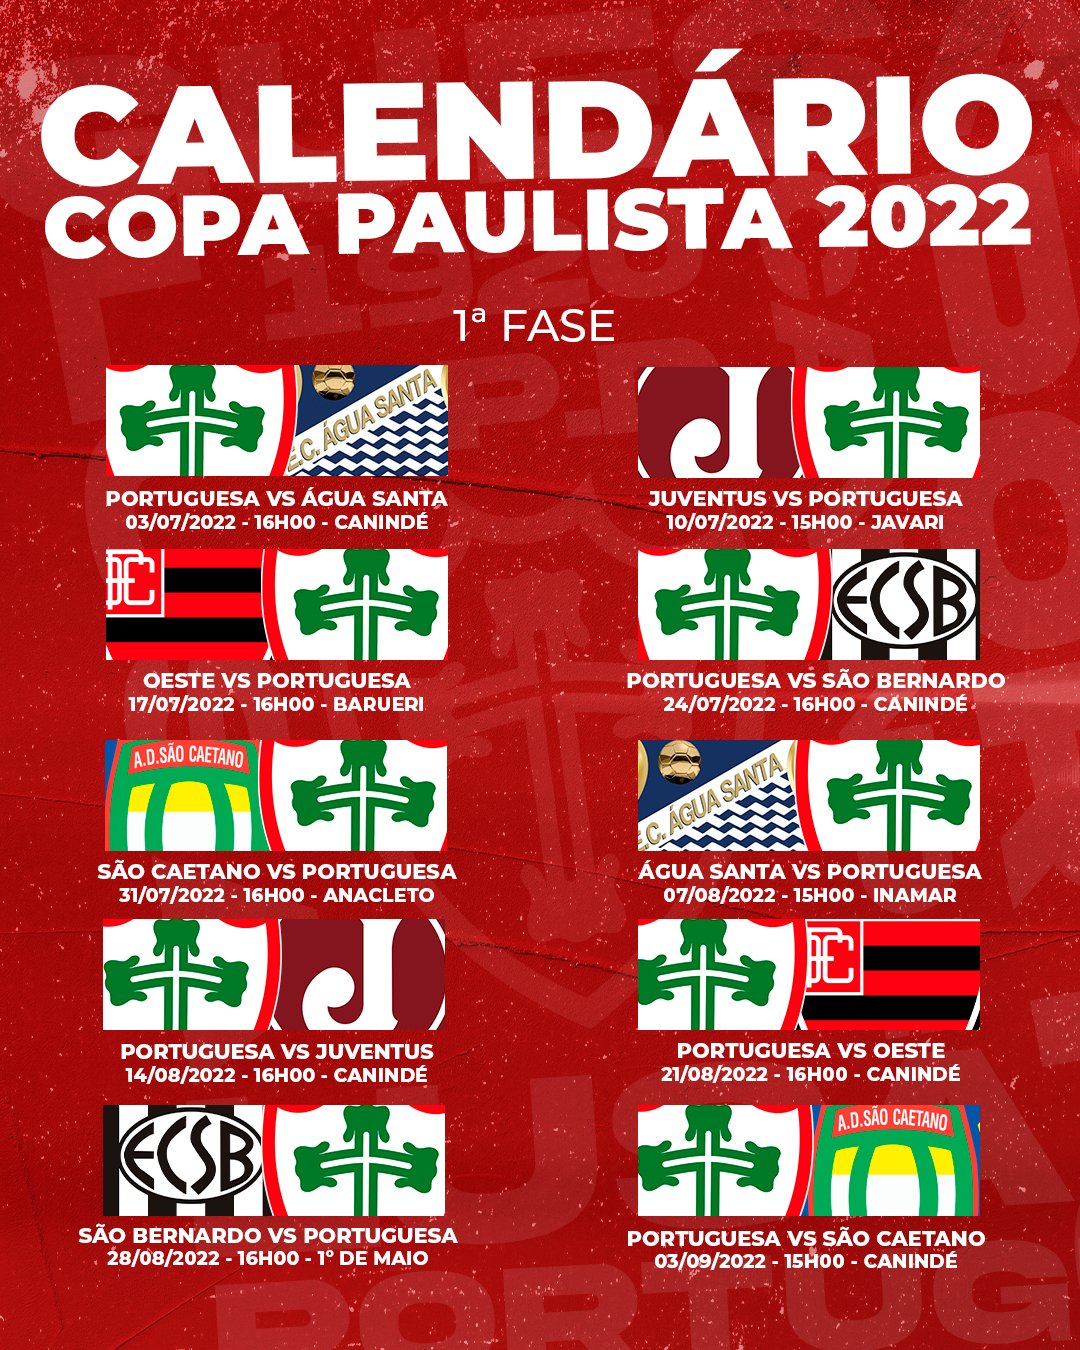 Portuguesa ❤️💚 on X: MARCA NA AGENDA❤️💚 Saíram os dias e horários dos  confrontos da Lusa na primeira fase da Copa Paulista 2022! Já anota na  agenda e avisa a galera 😍 #